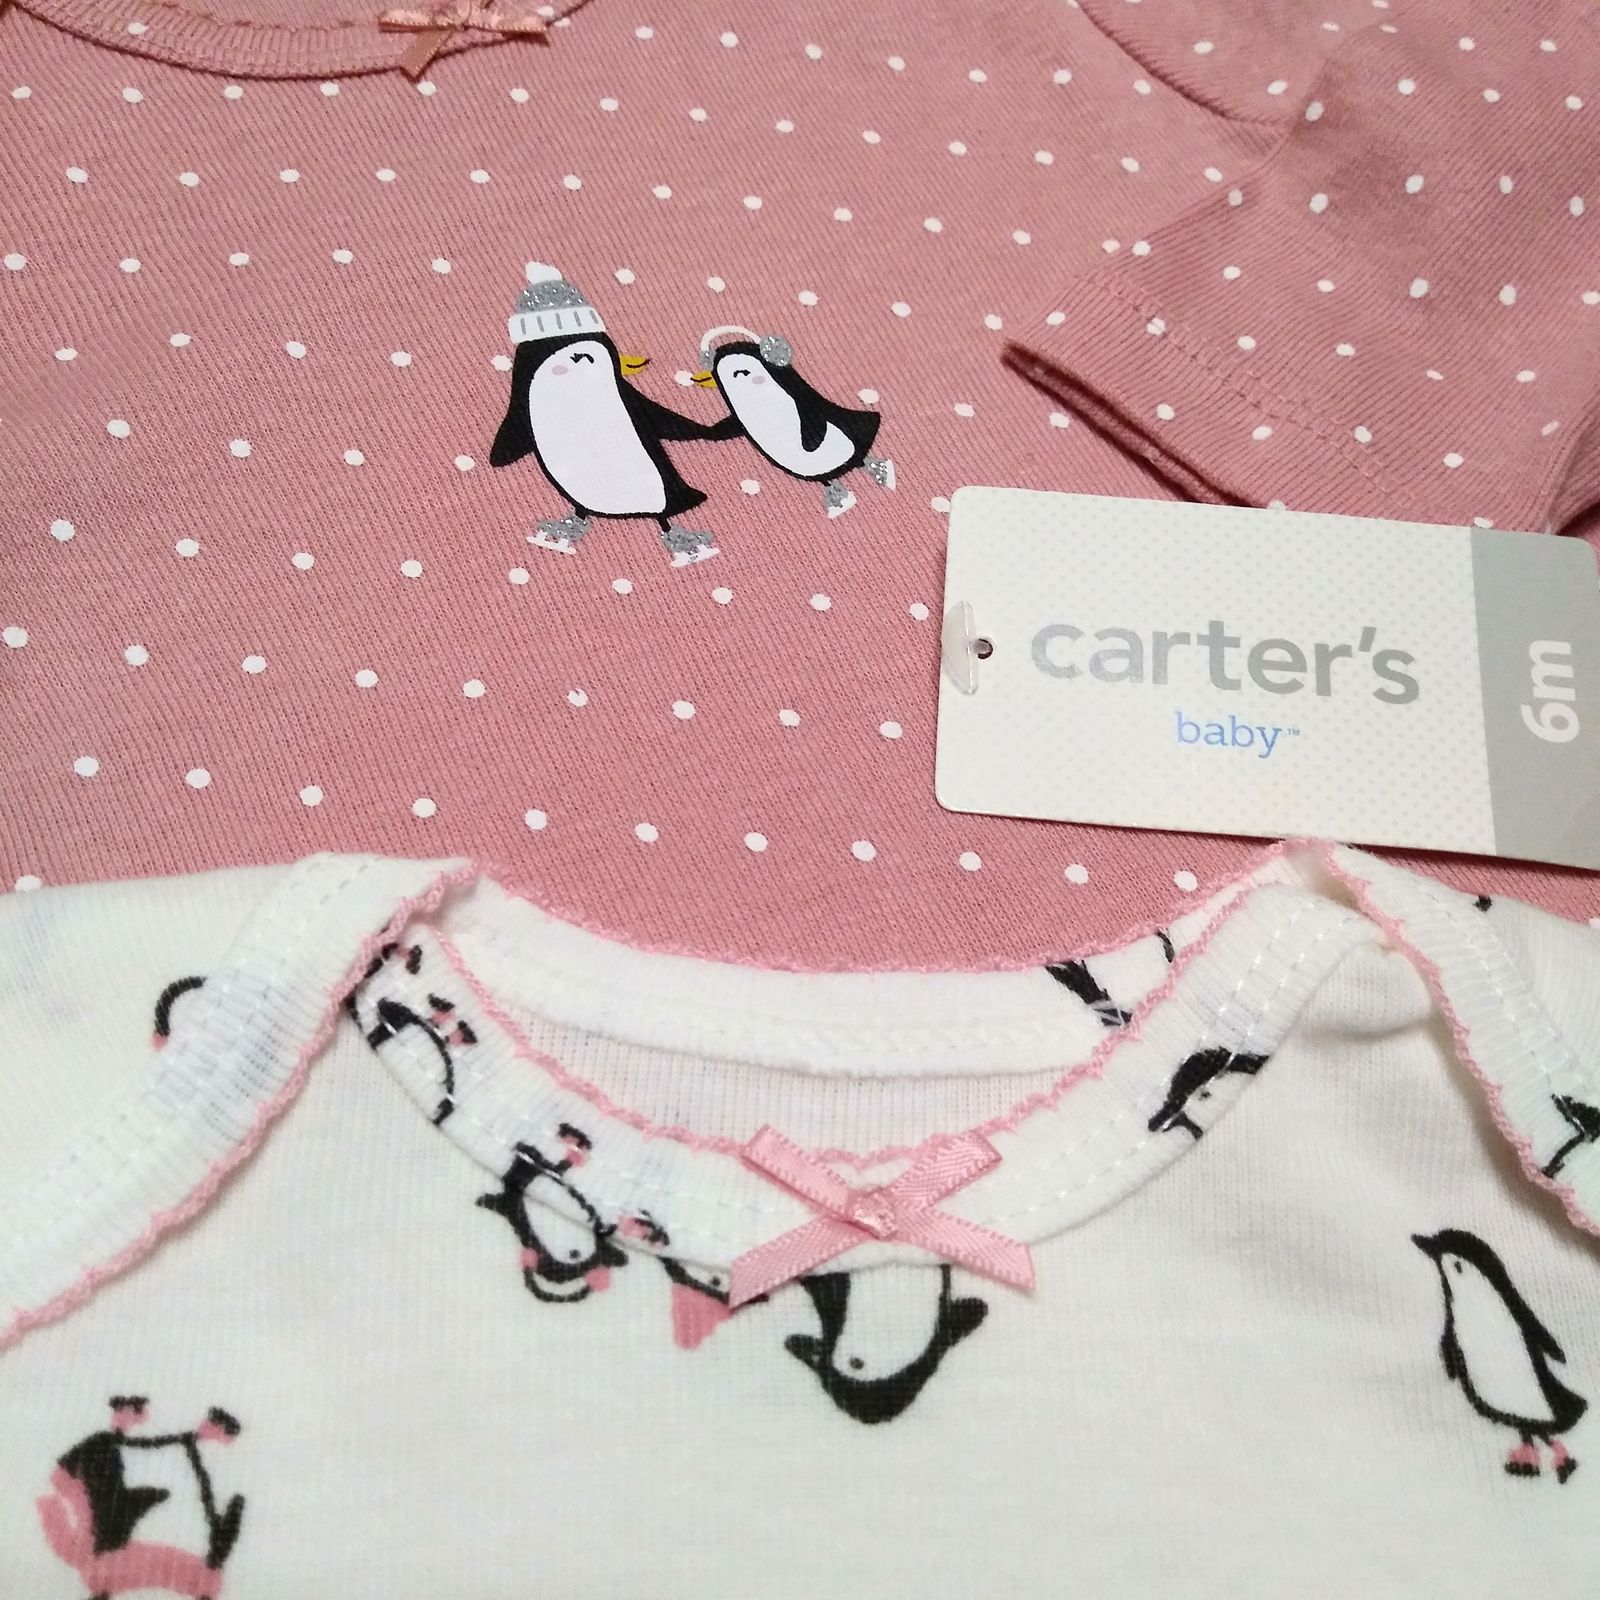 ست 3 تکه لباس نوزادی دخترانه کارترز طرح Penguin کد M617 -  - 7